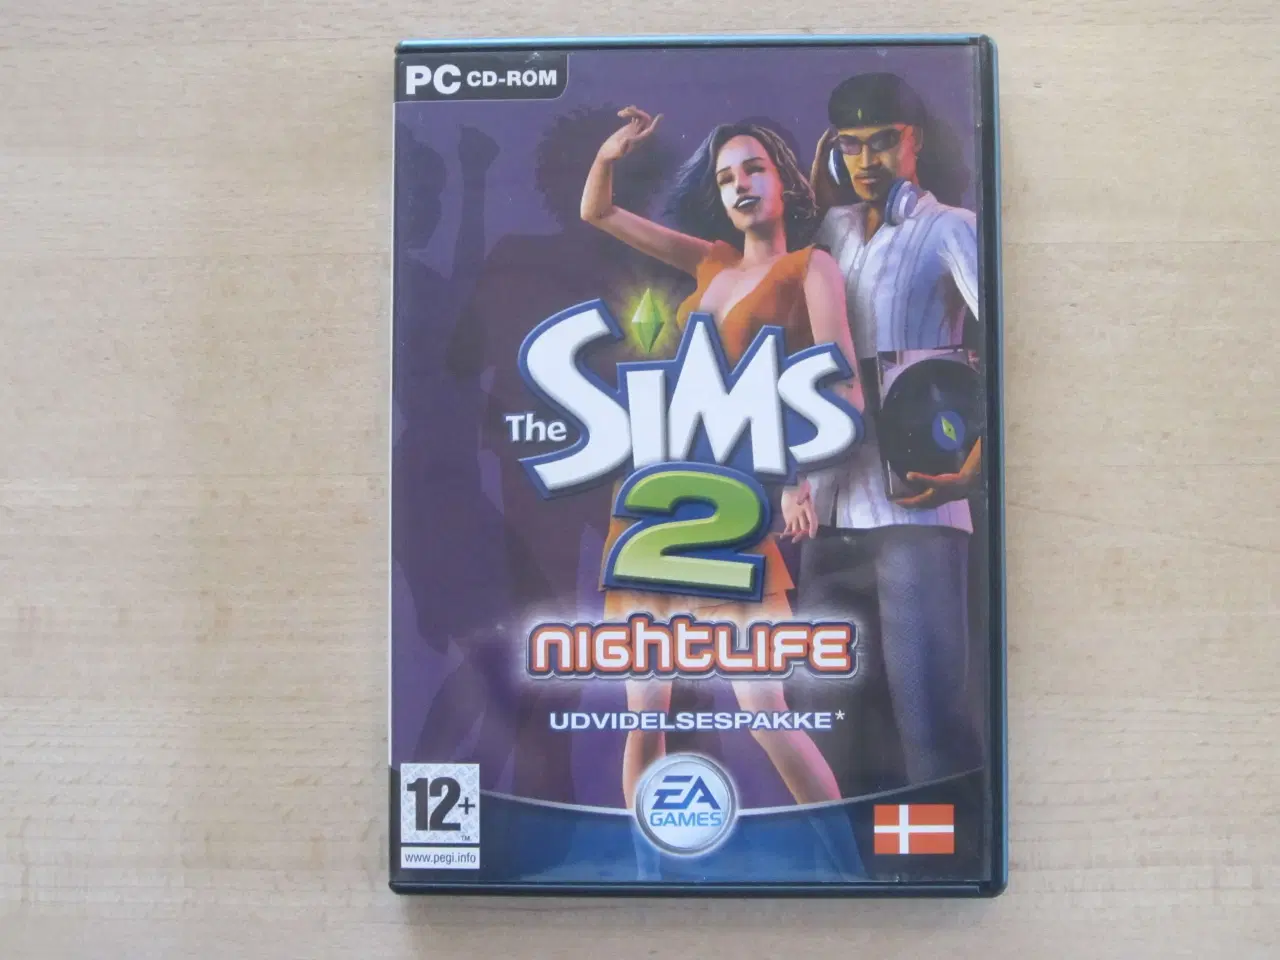 Billede 1 - PC-spil - The Sims 2 - Nightlife - Udvidelsespakke